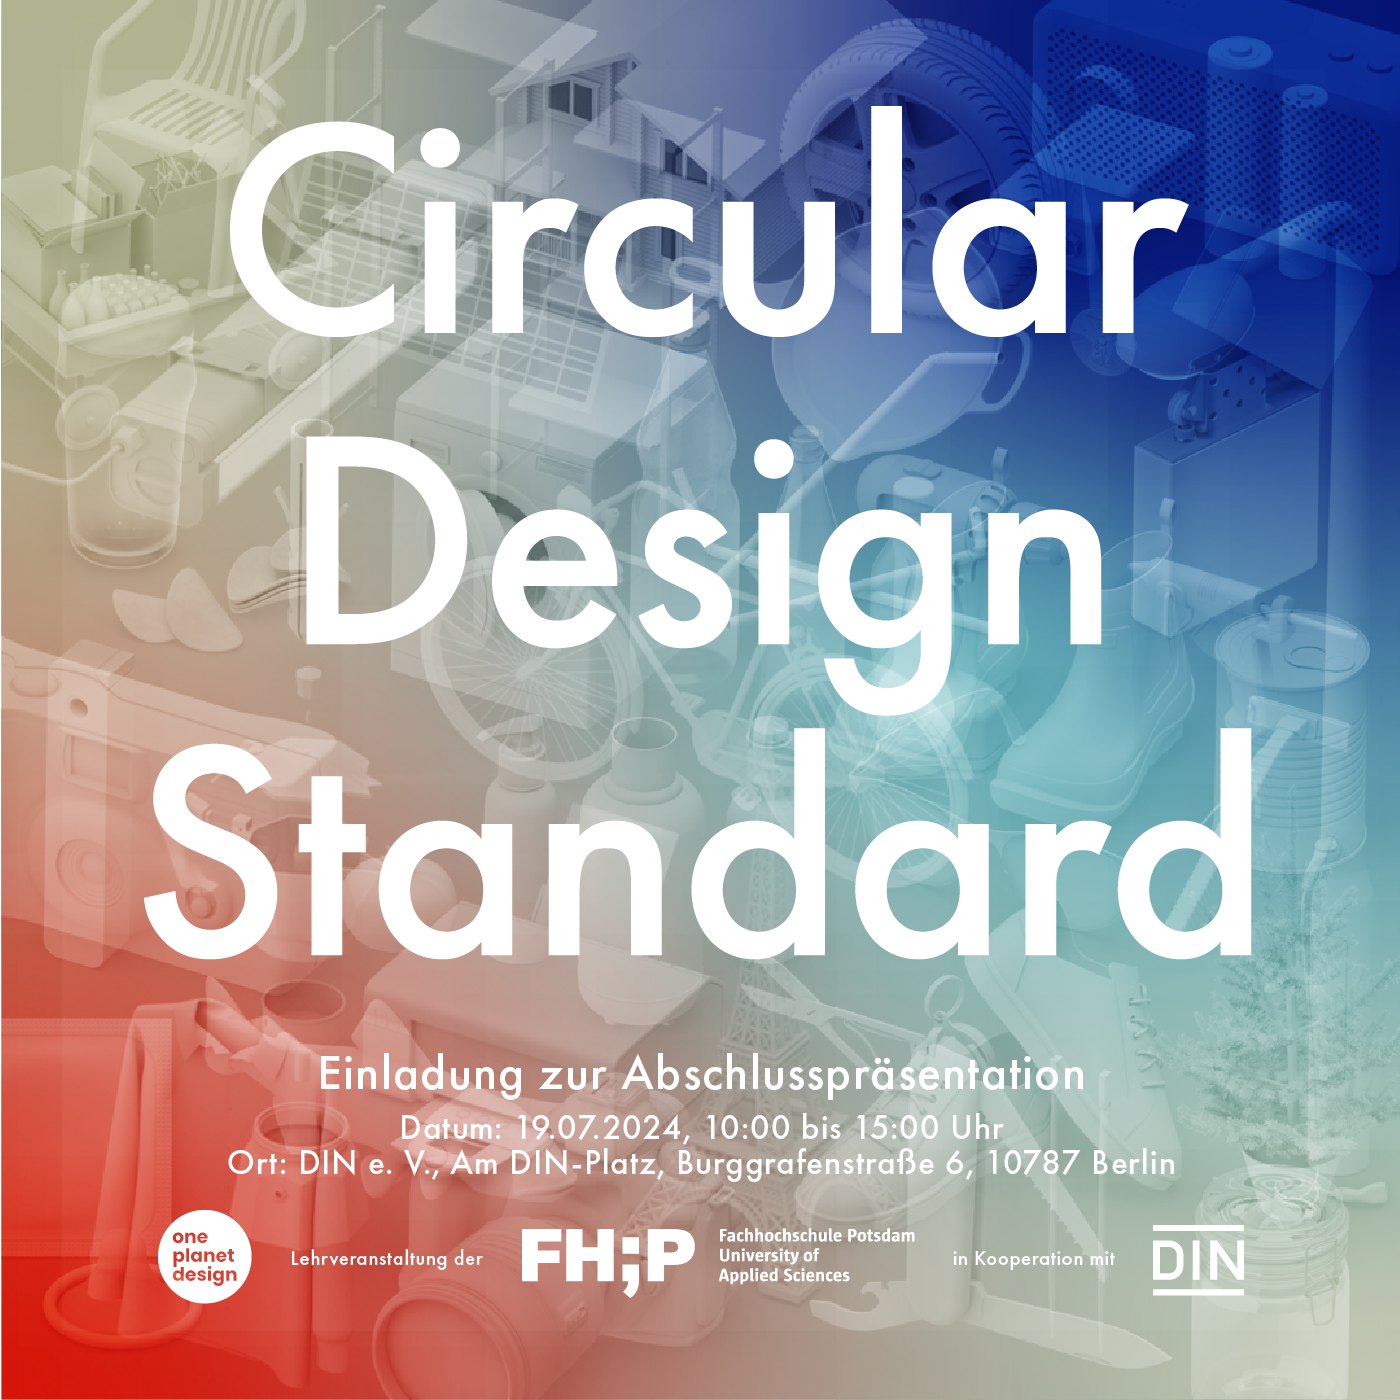 Plakat zur Einladung zur Abschlusspräsentation des Kurses "Circular Design Standard" des FB Design der Fachhochschule Potsdam